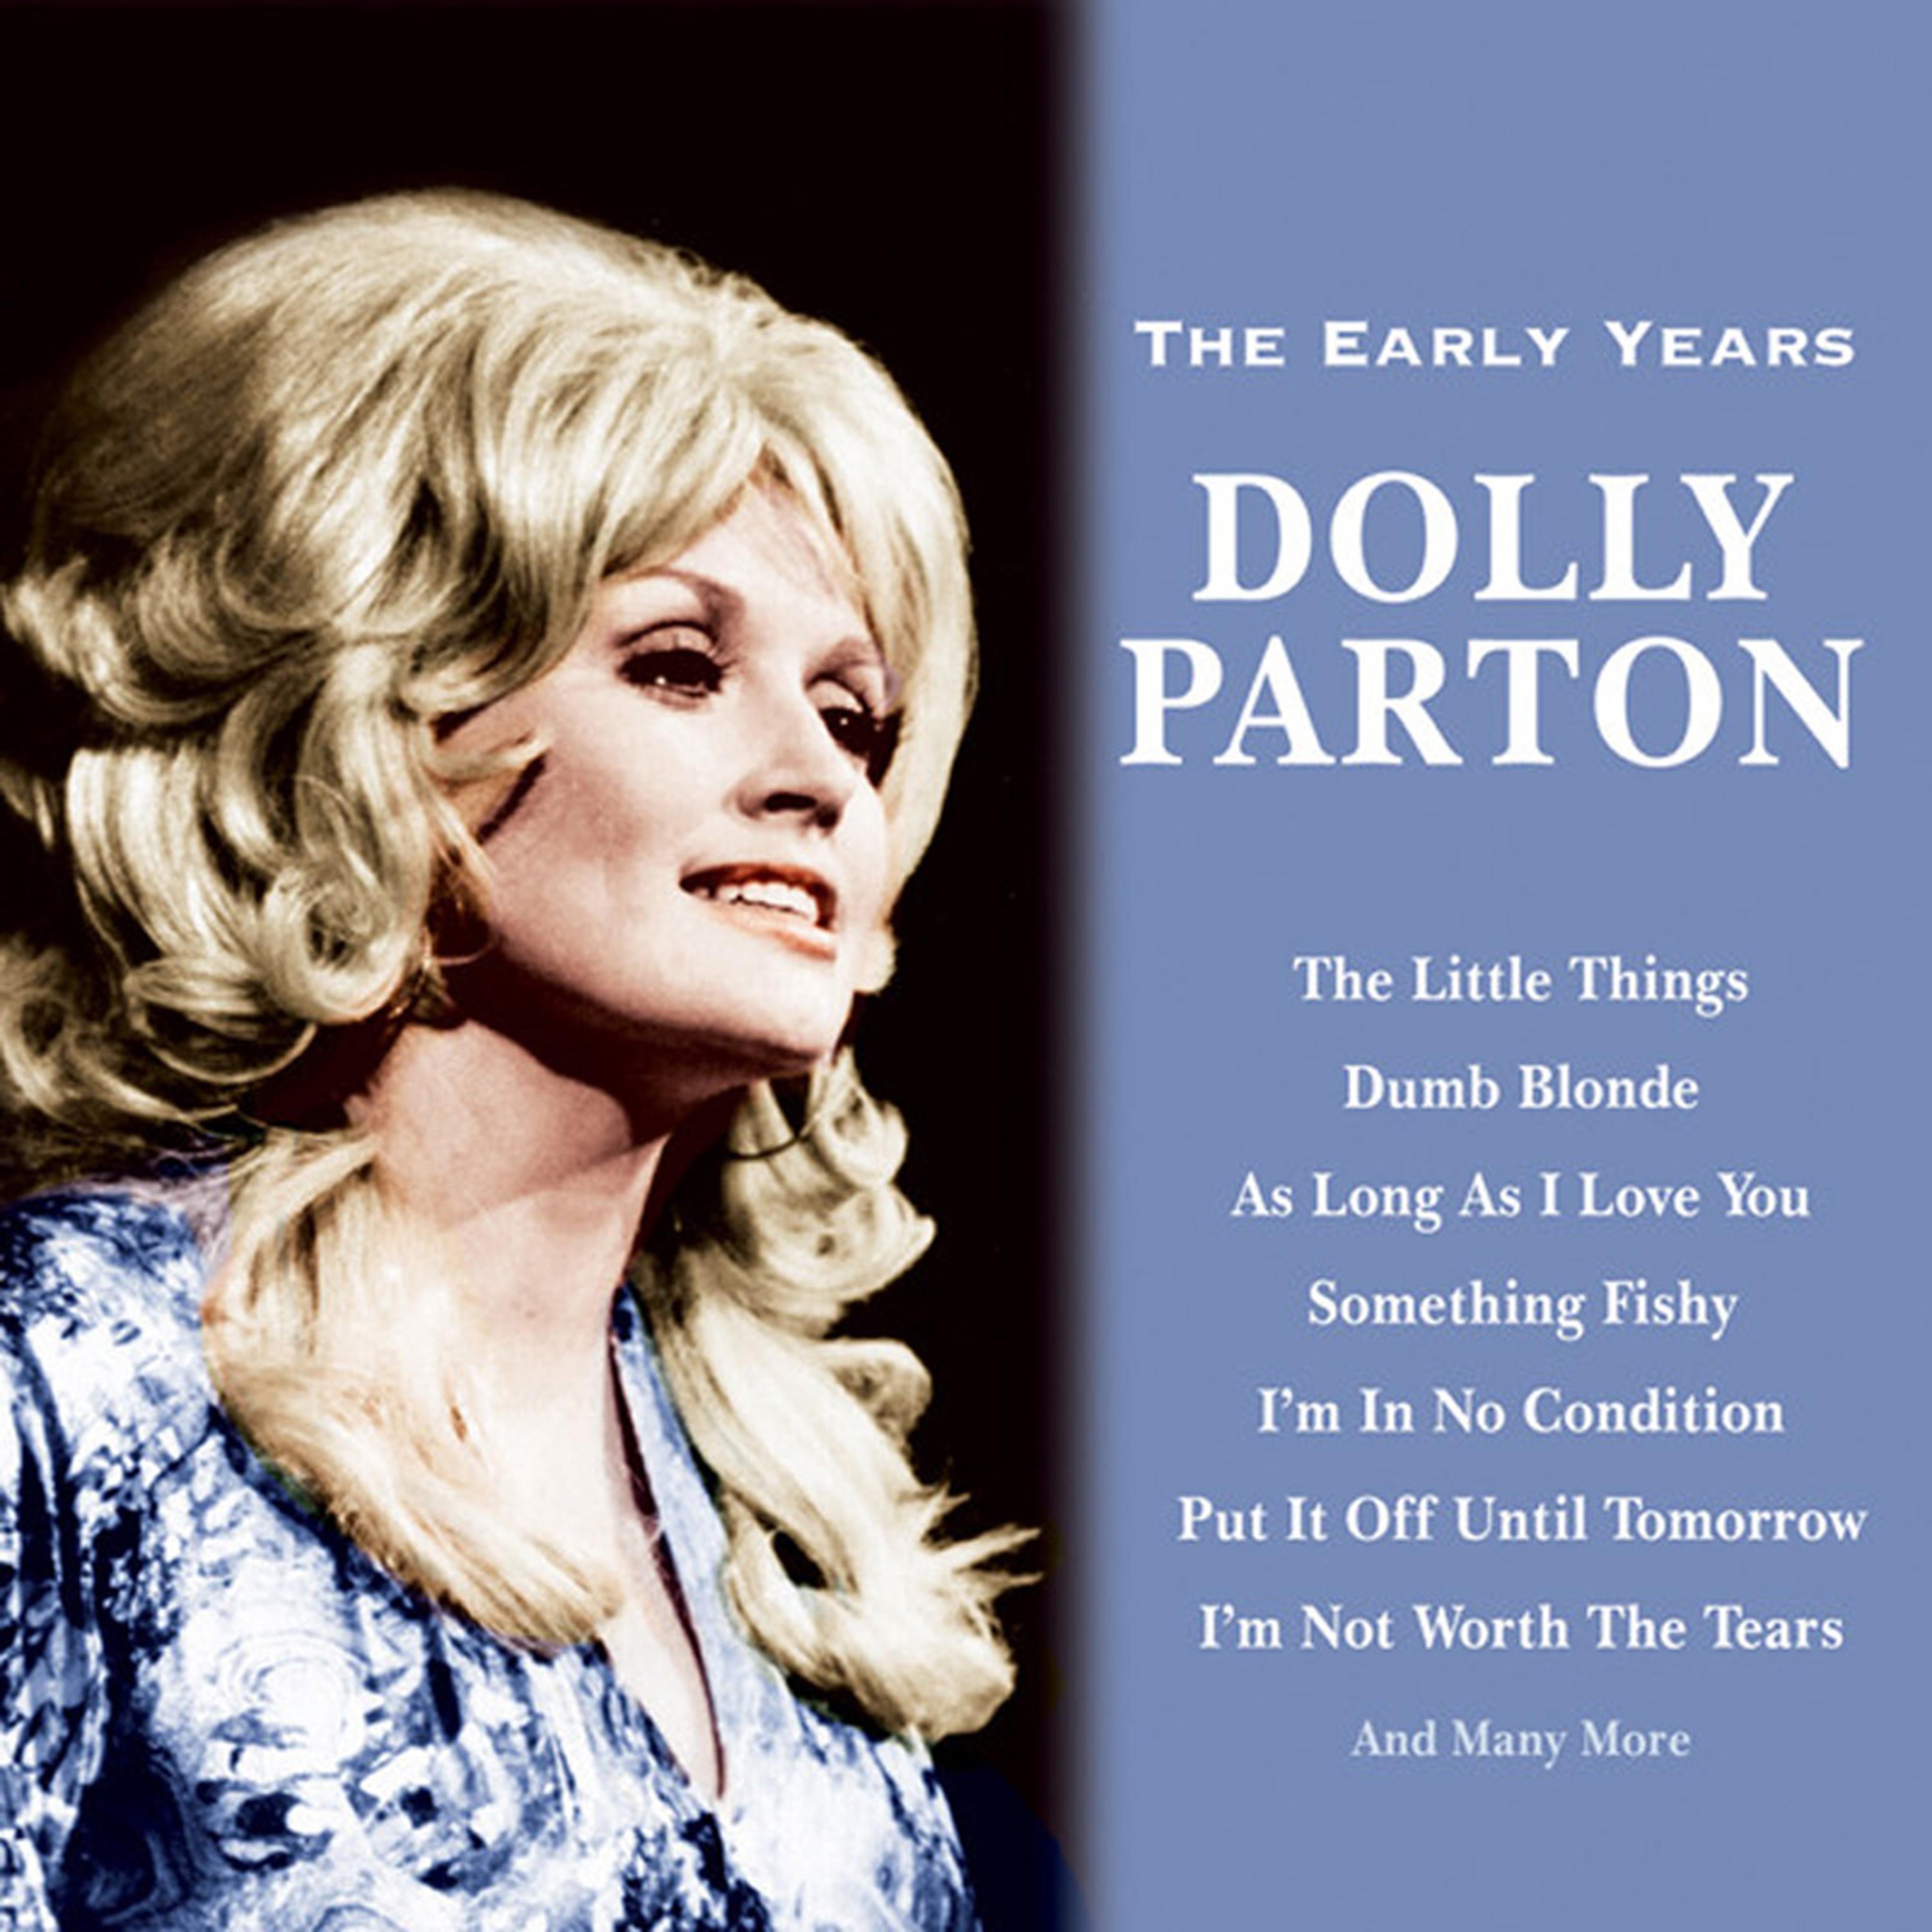 Dolly Parton - The Company You Keep